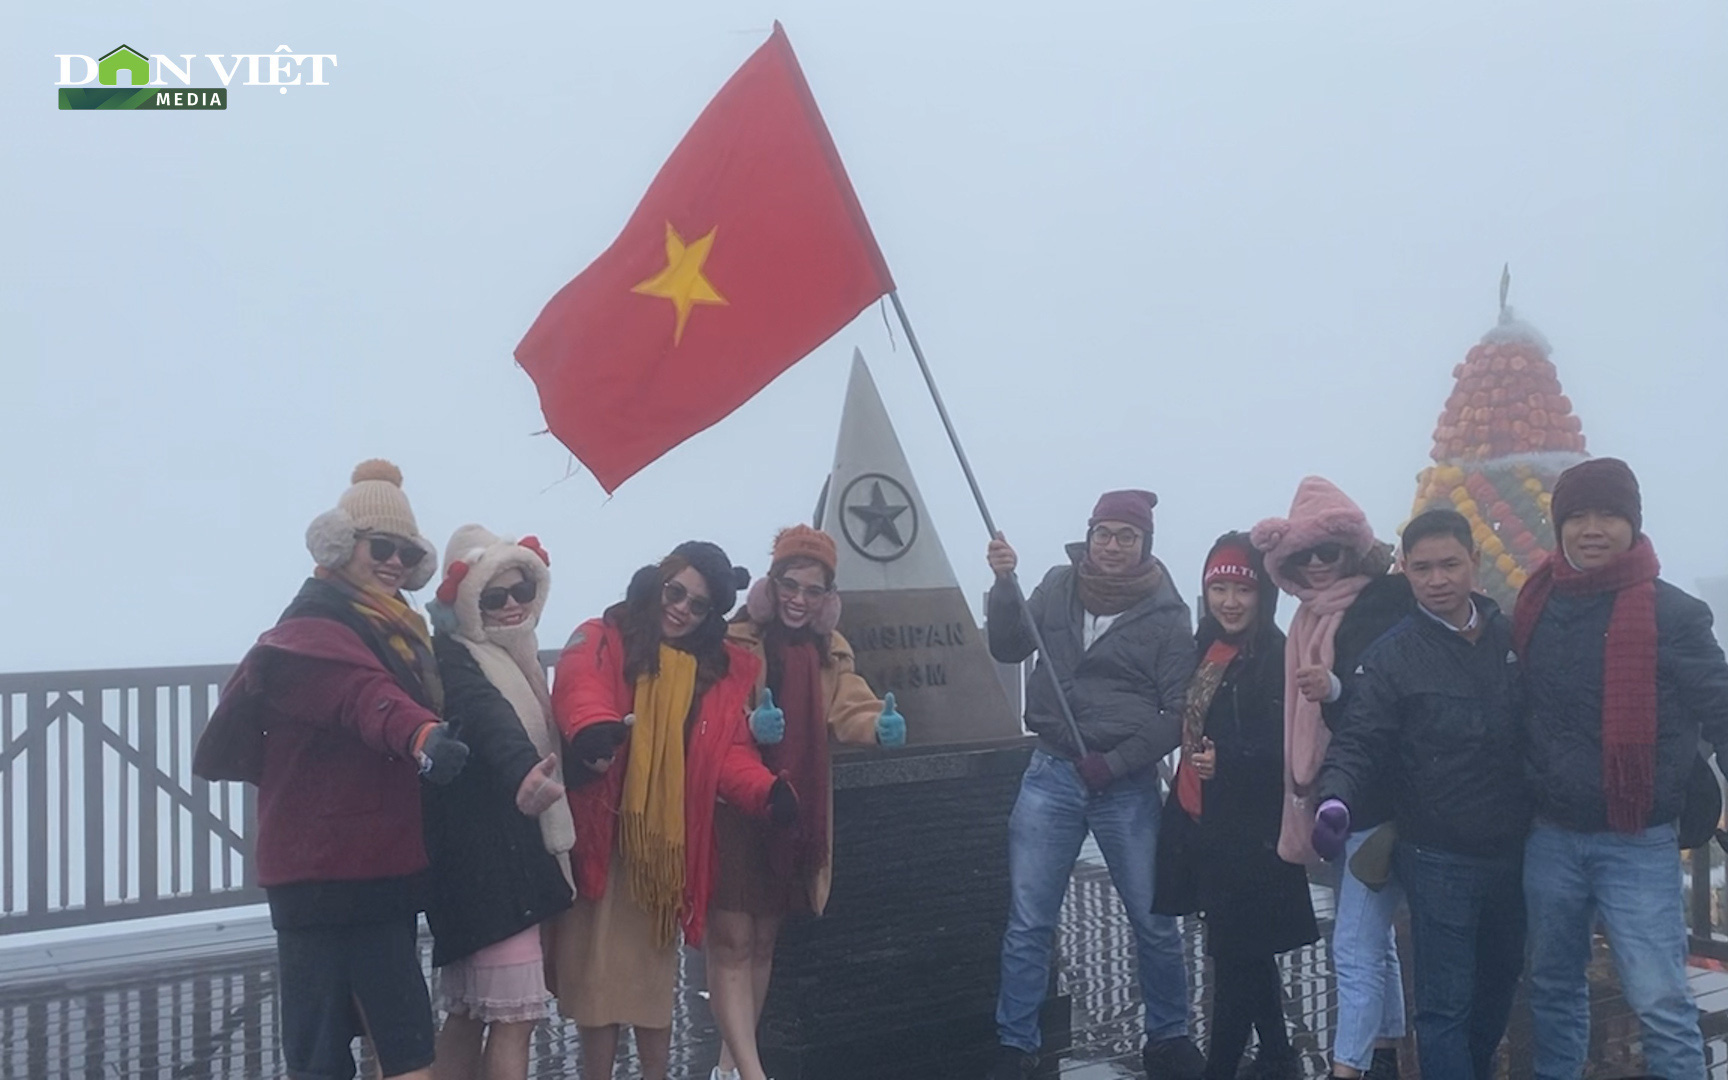 Video: Mặc kệ buốt giá, đông nghịt khách du lịch chen chân lên đỉnh Fanxipan chờ đón băng tuyết